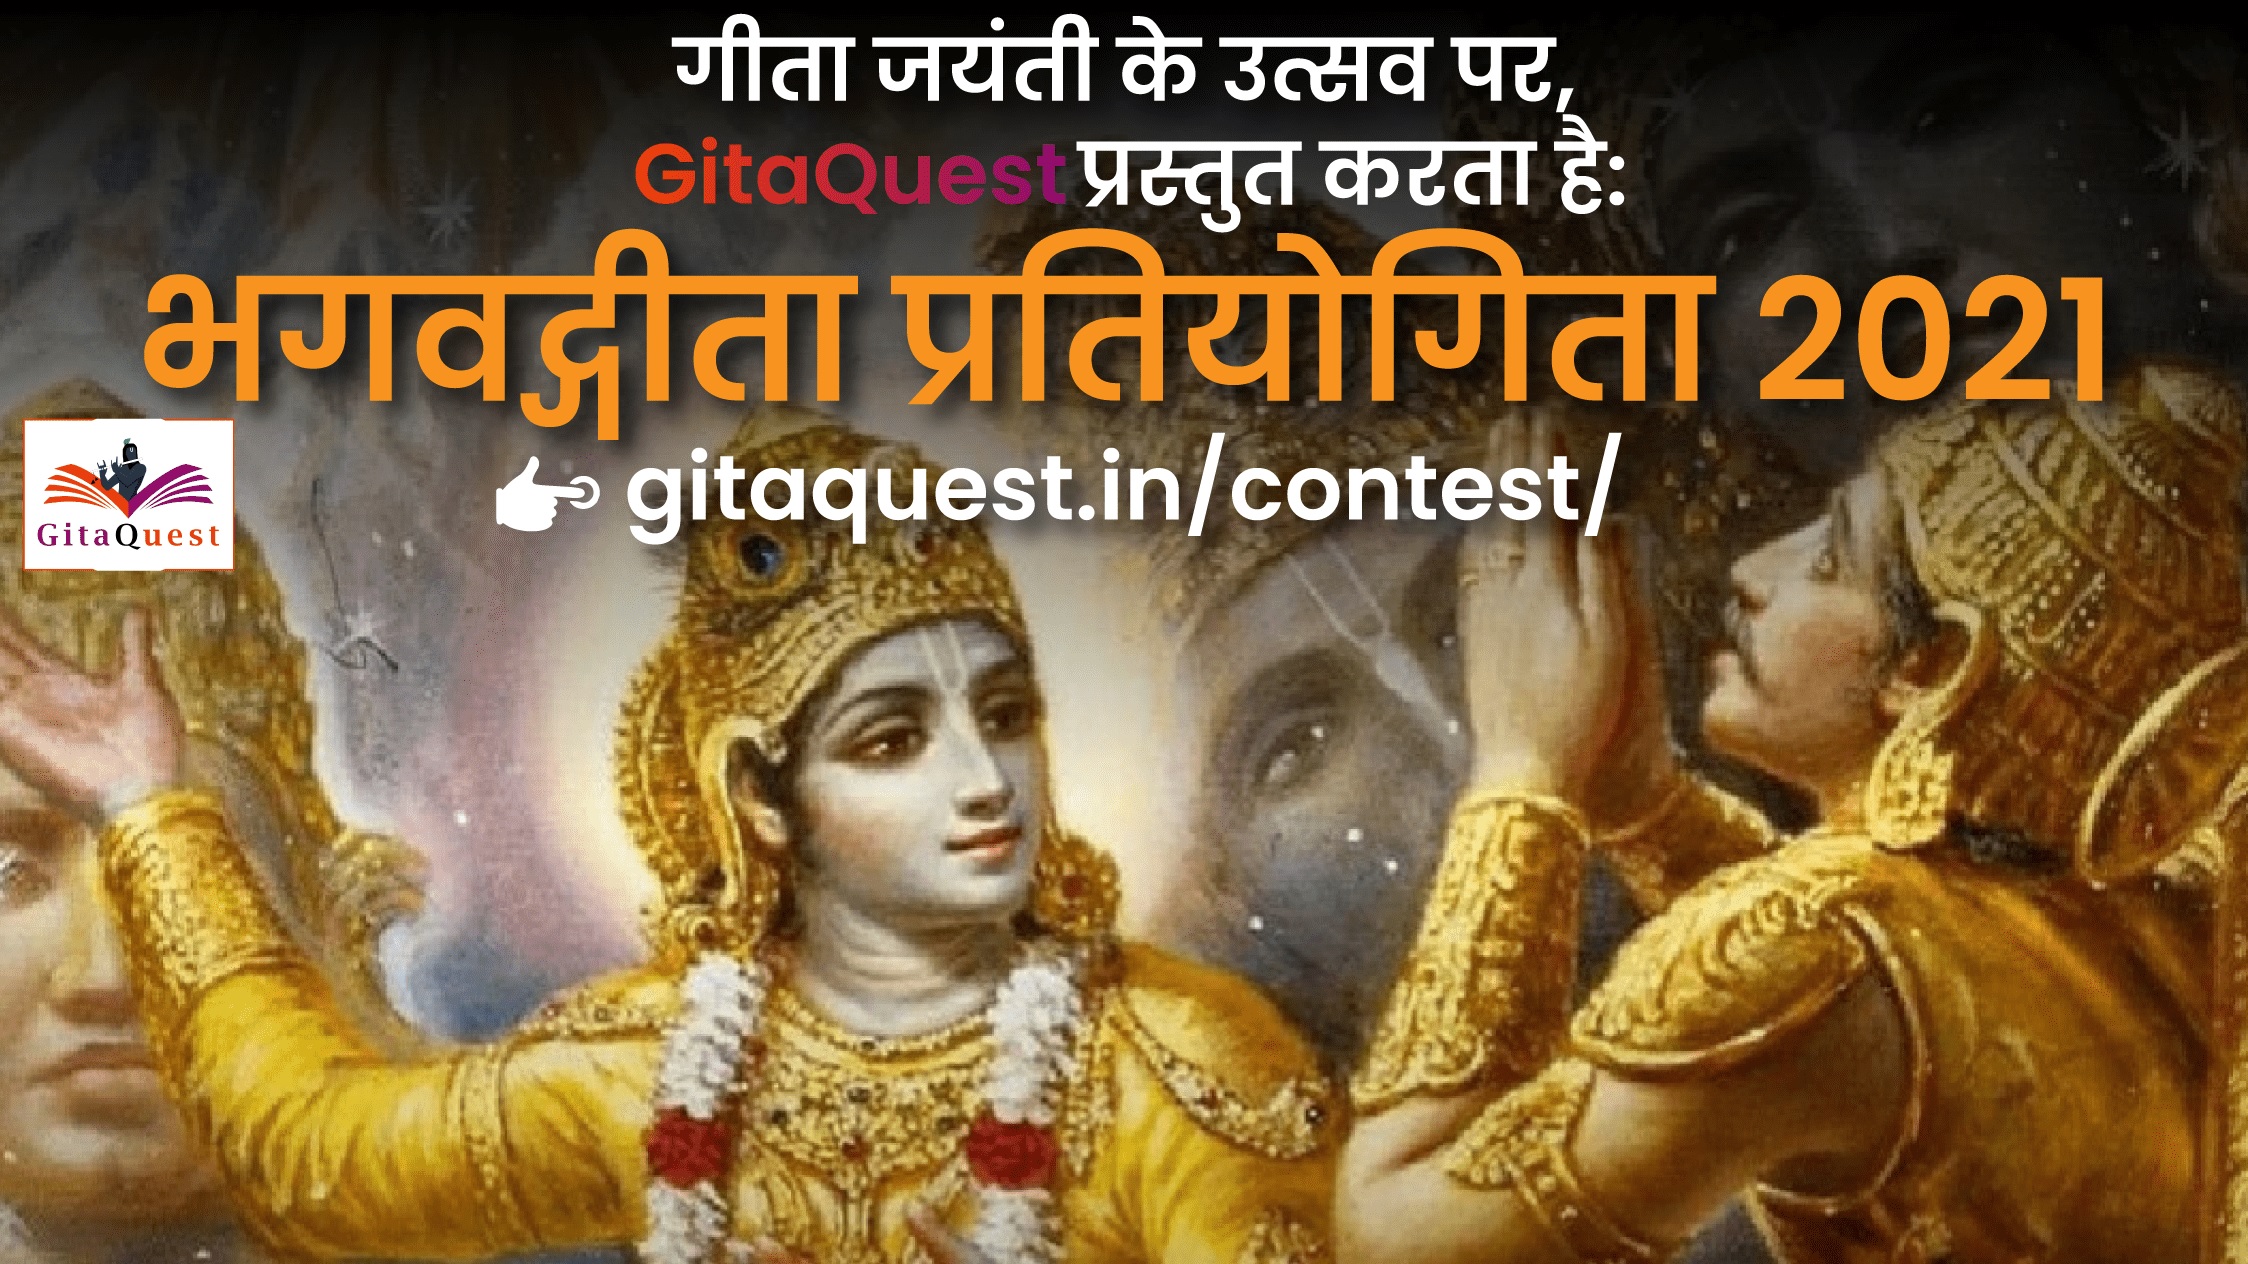 GitaQuest Bhagavad Gita Contest 2021